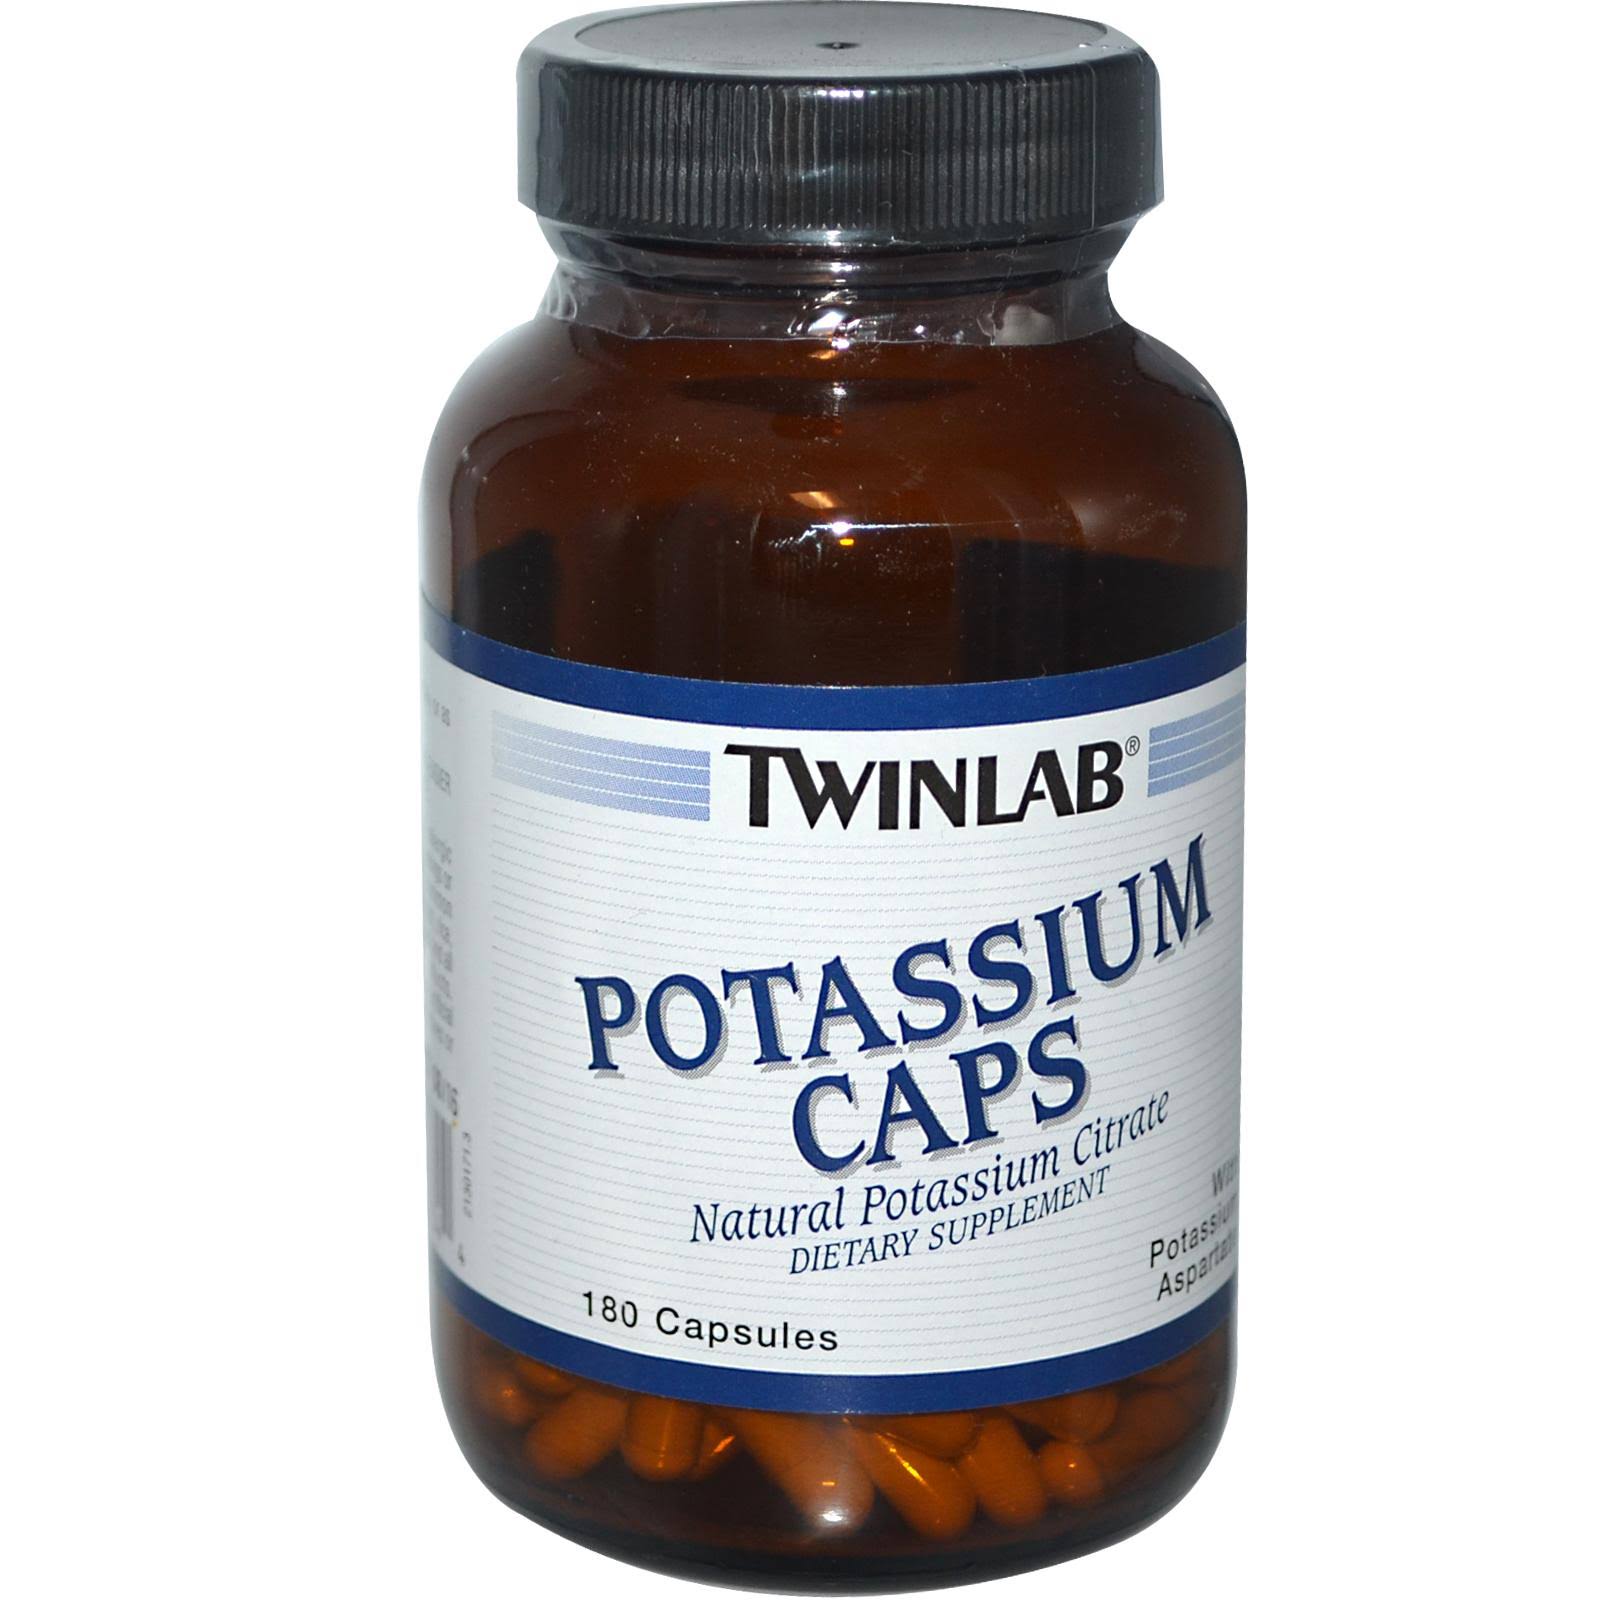 Twinlab Potassium Caps Dietary Supplement - 180 Capsules